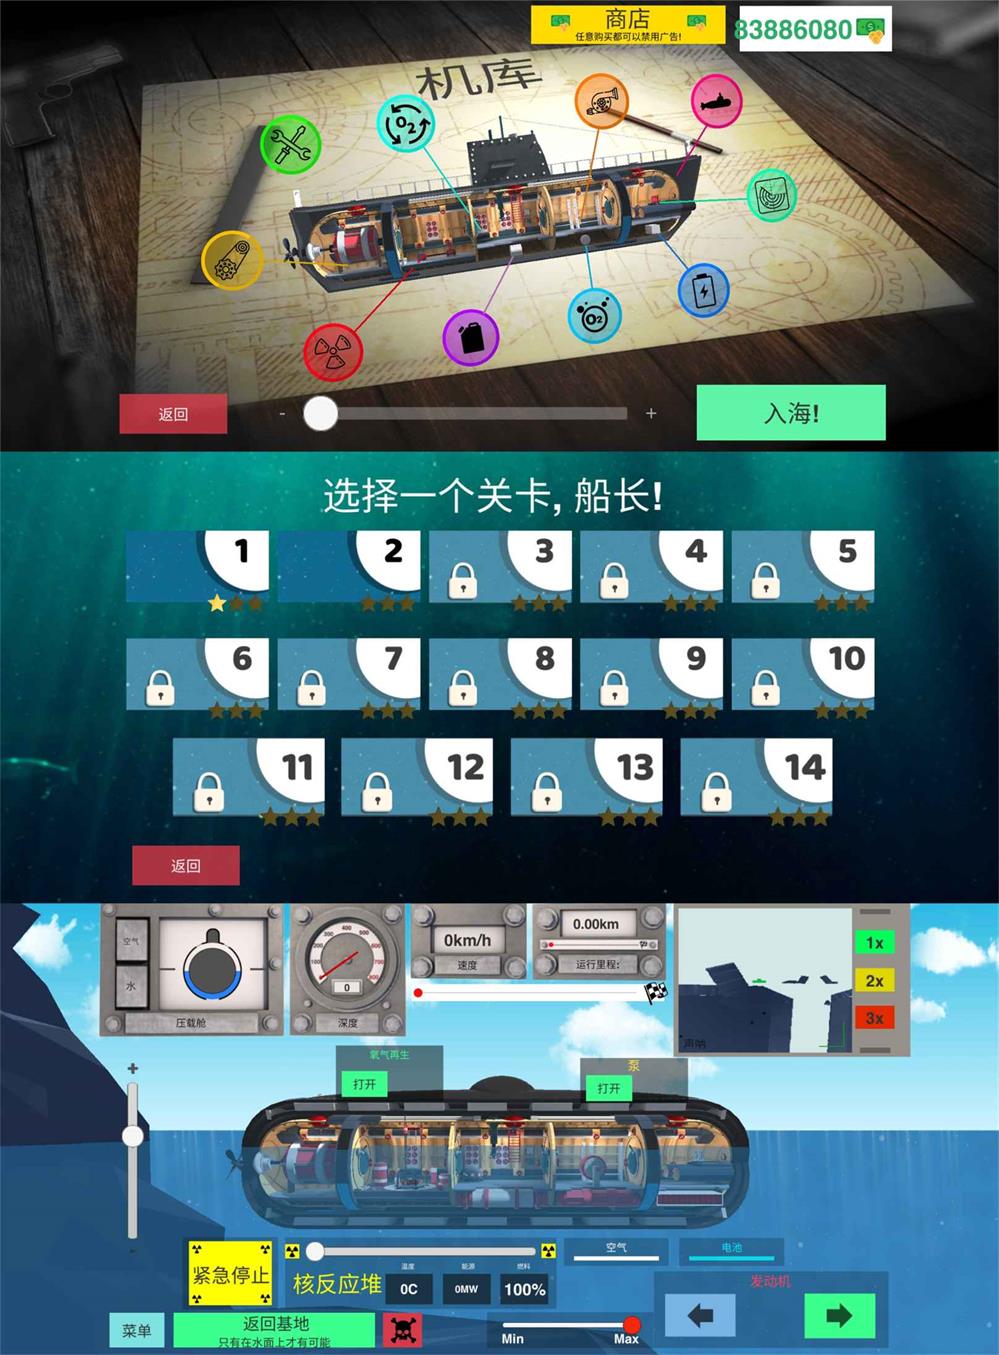 模拟游戏 核潜艇模拟器 图片